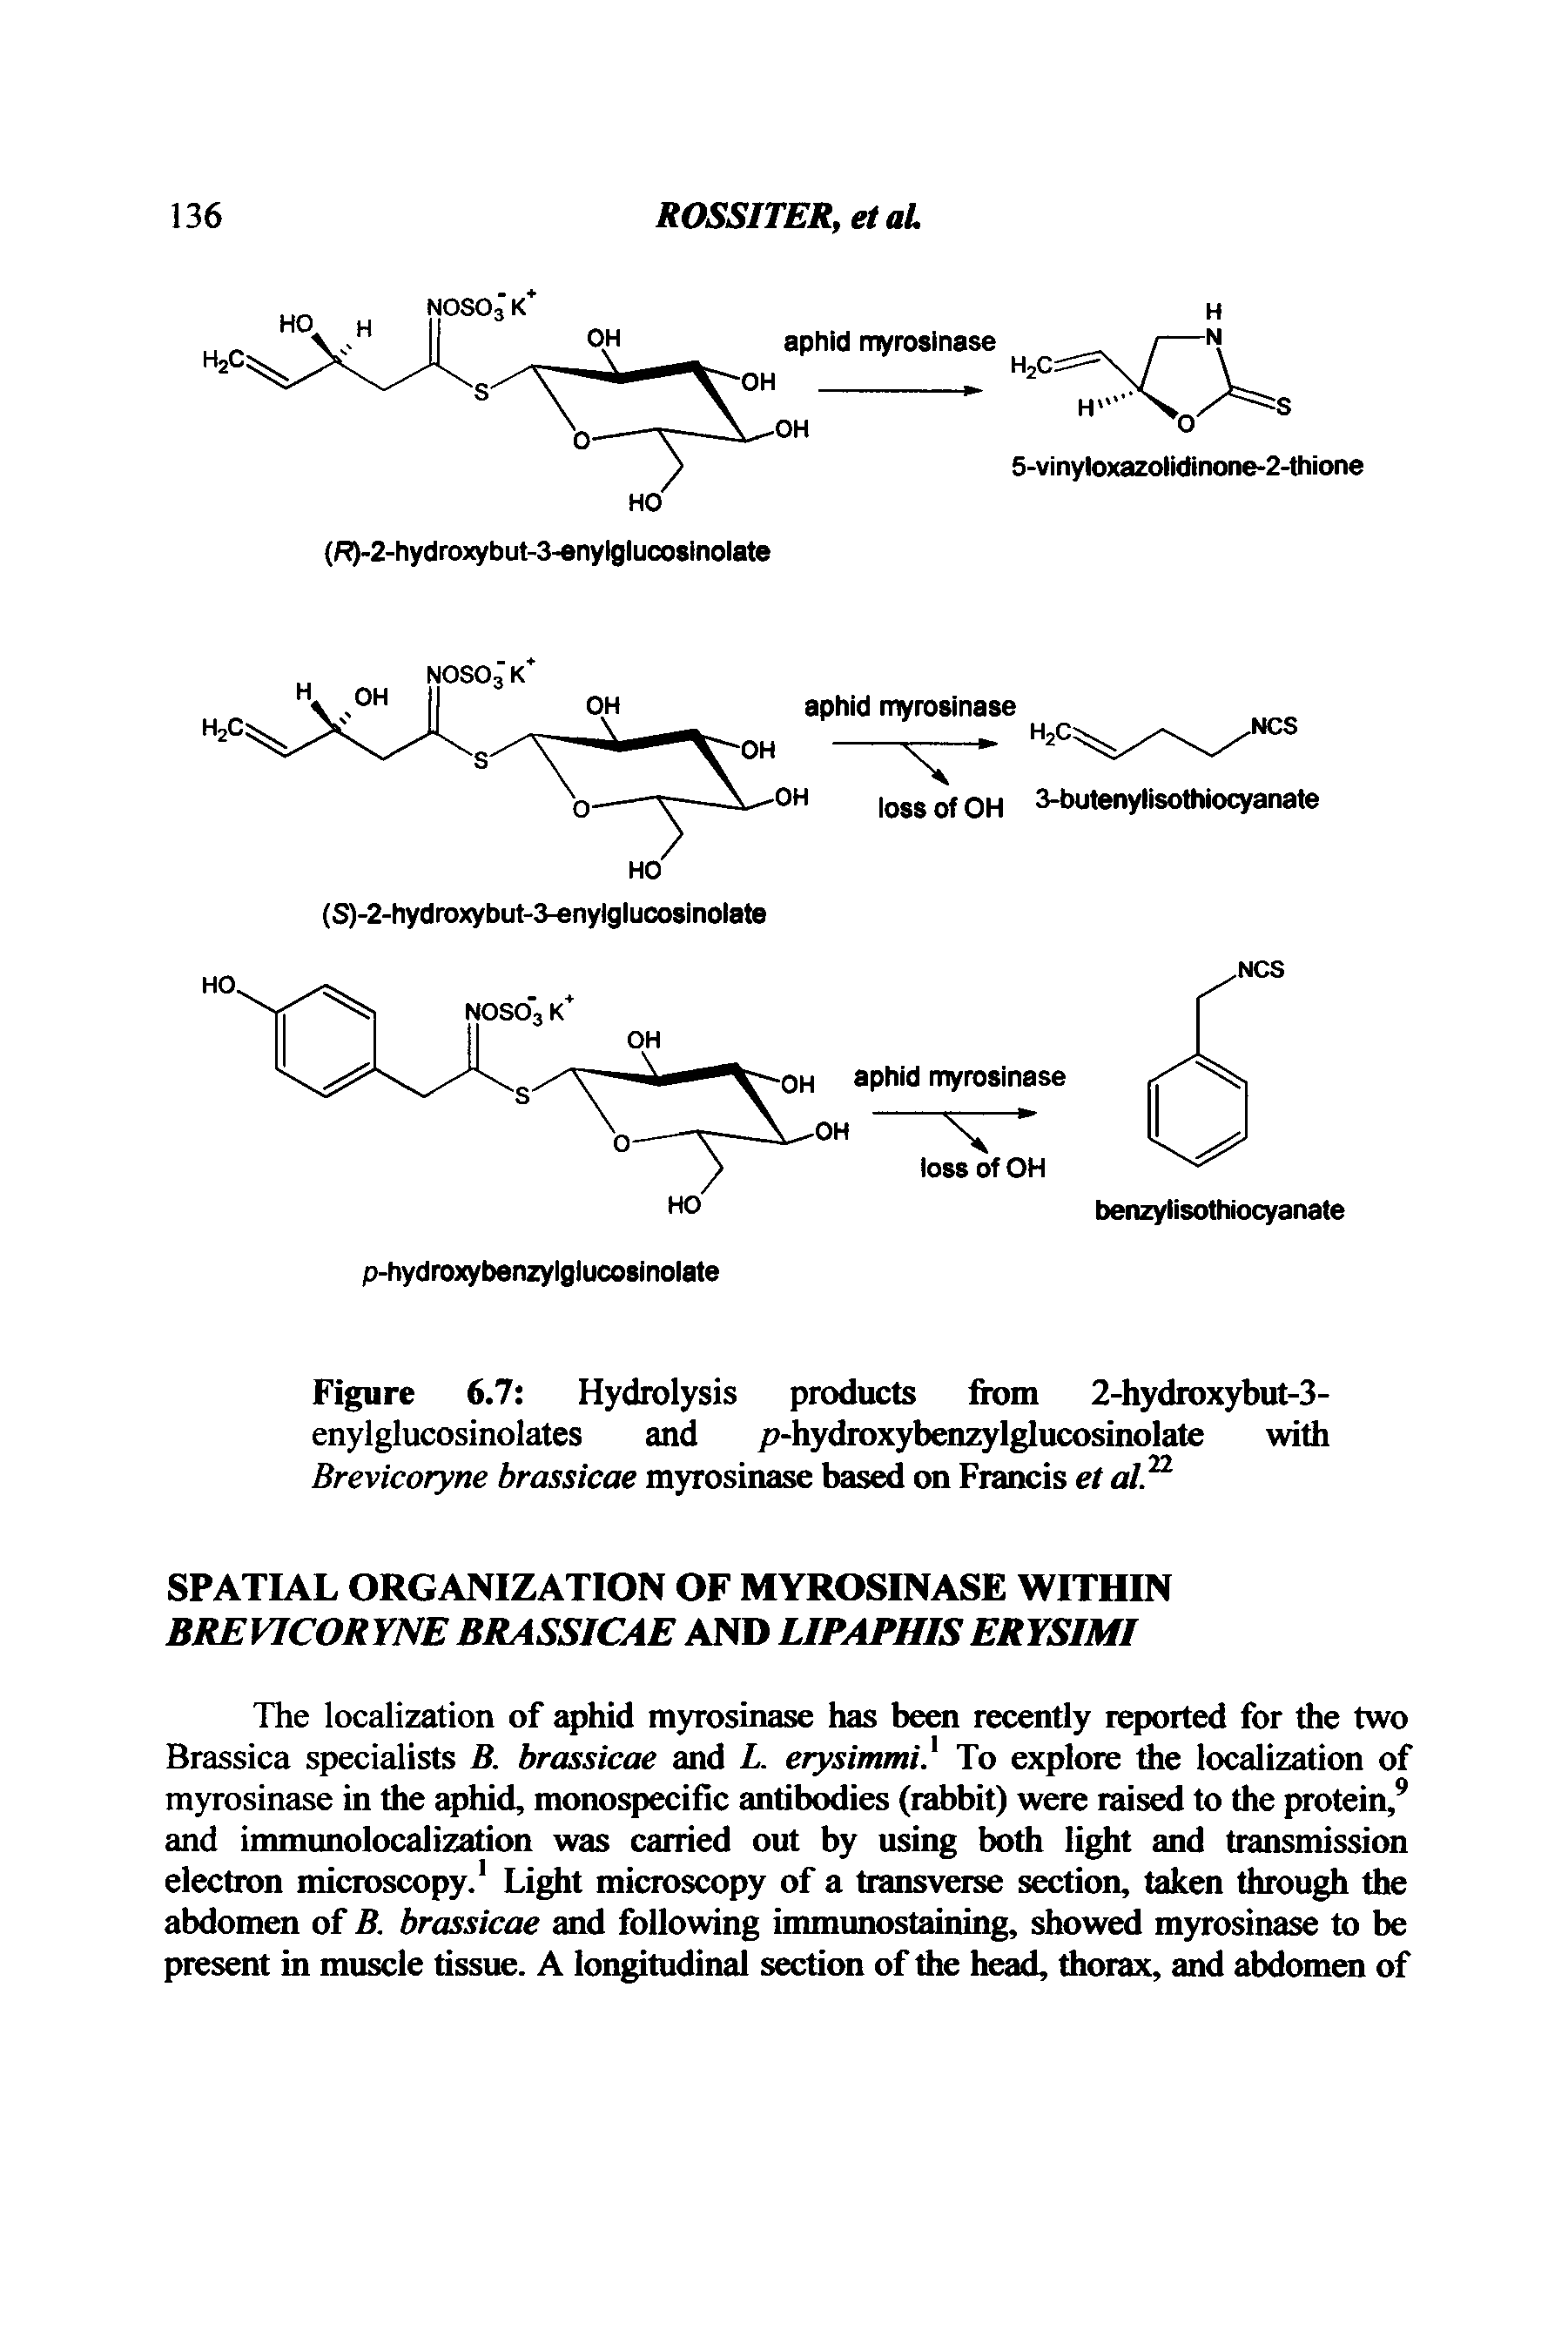 Figure 6.7 Hydrolysis products from 2-hydroxybut-3-enylglucosinolates and p-hydroxybenzylglucosinolate with Brevicoryne brassicae myrosinase based on Francis et al 2...